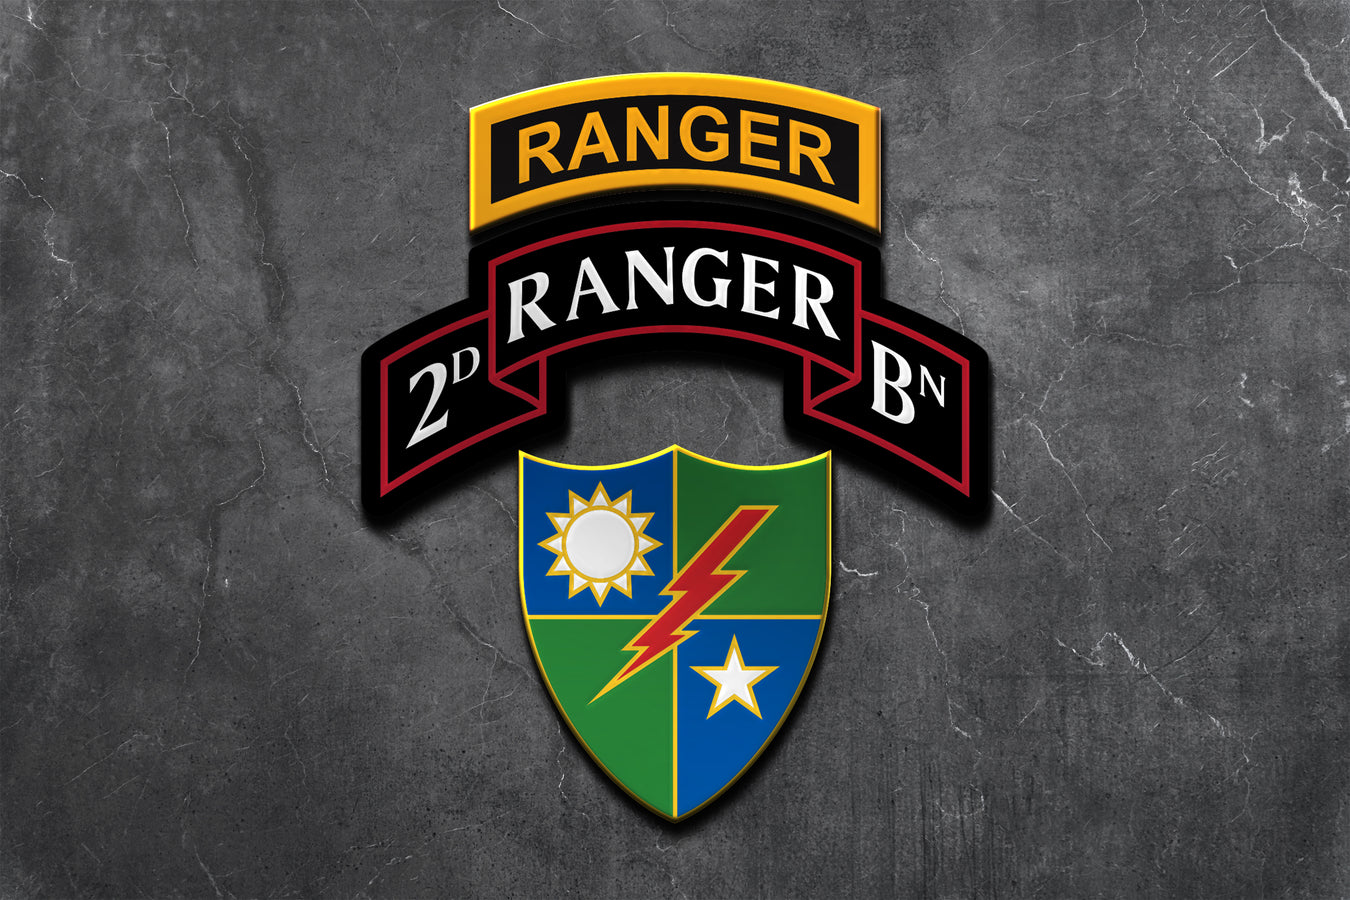 2nd Ranger Battalion Merchandise